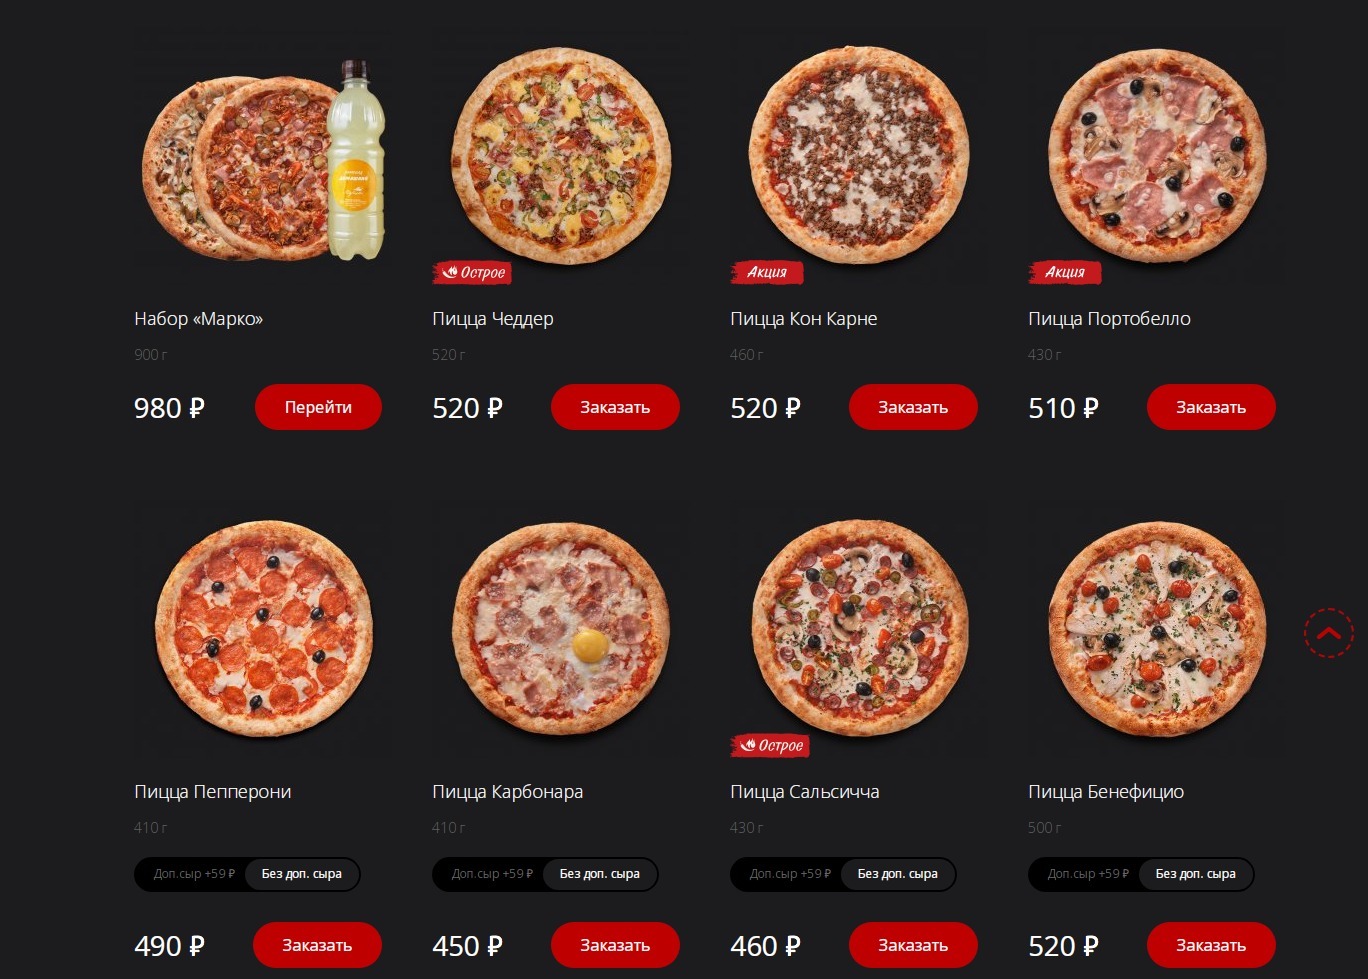 технологическая карта пицца четыре сыра фото 65